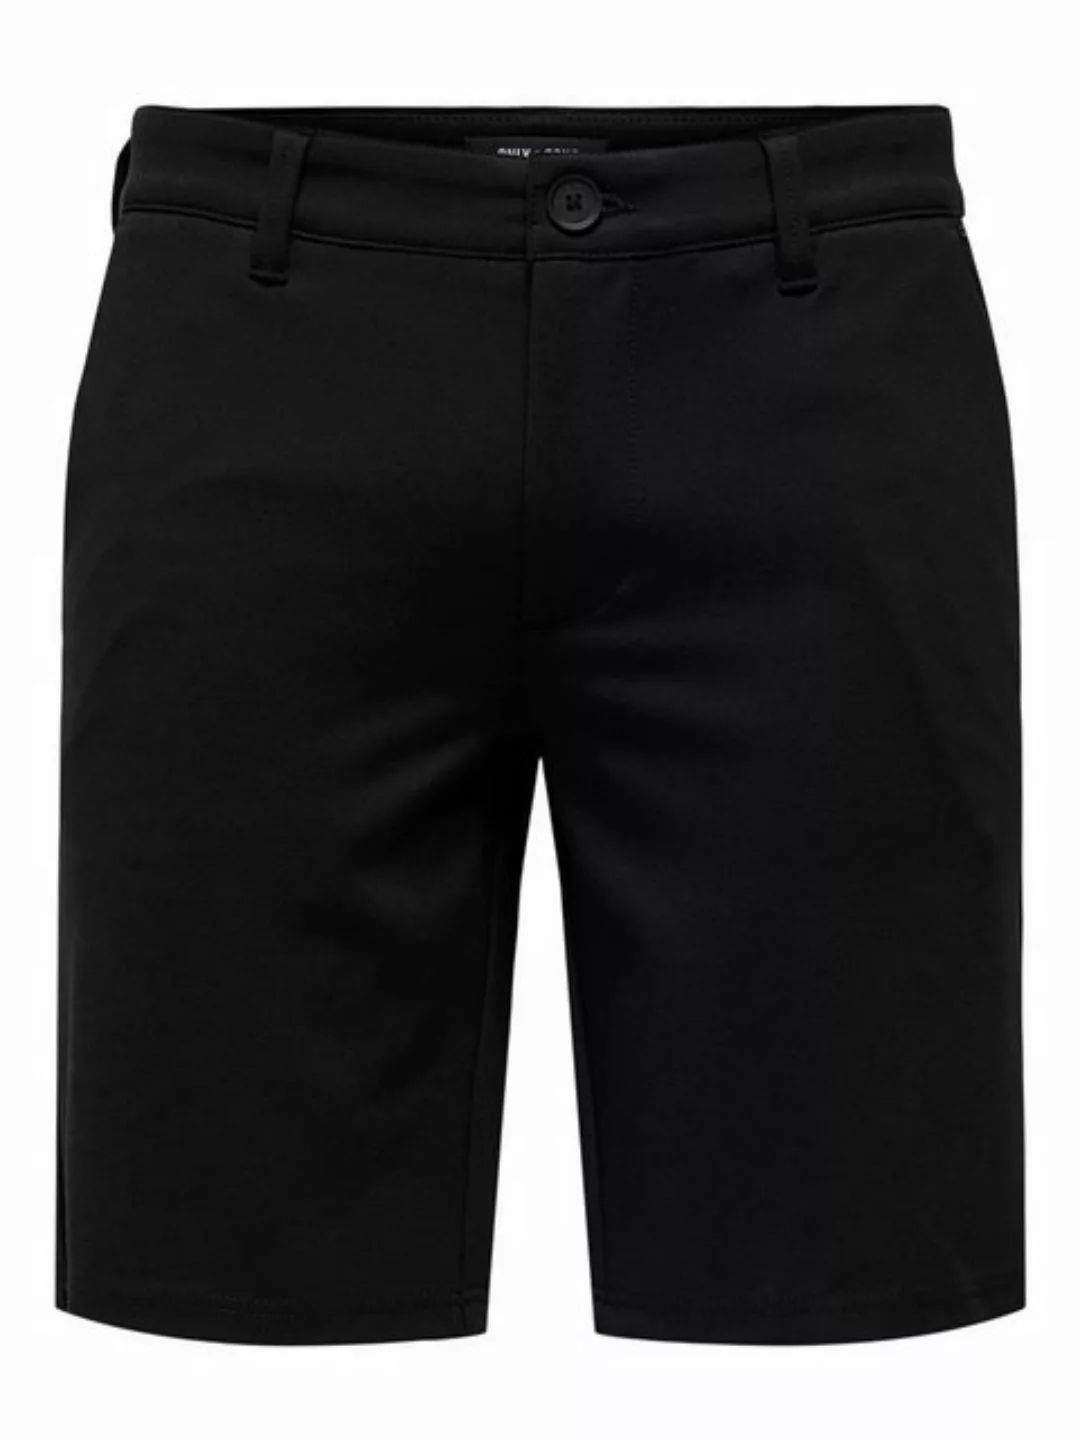 ONLY & SONS Chinoshorts Shorts Bermuda Pants Sommer Hose 7413 in Schwarz günstig online kaufen